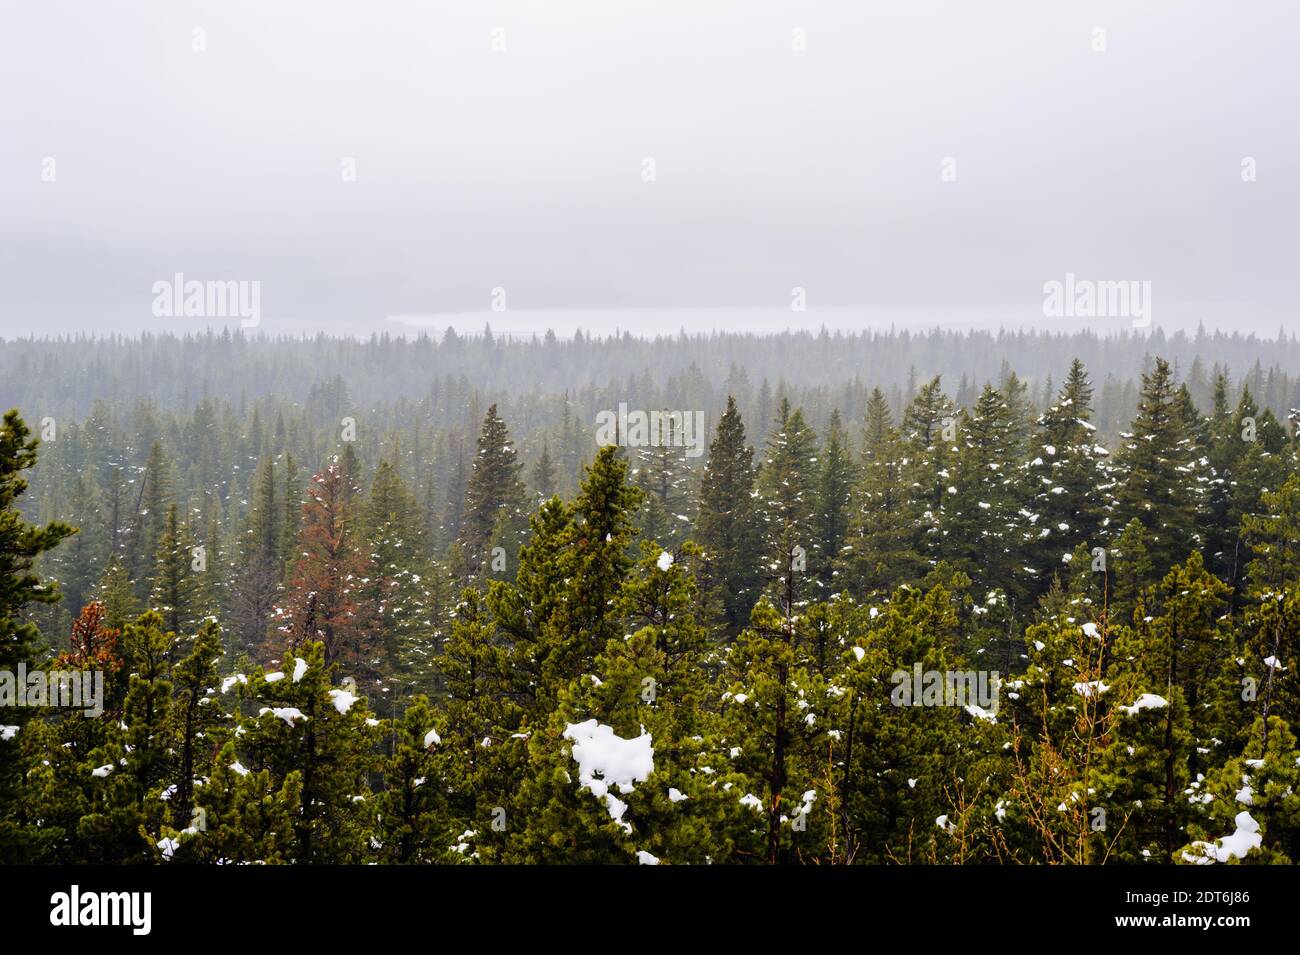 Forêt de conifères et patchs de neige dans un brouillard épais, près des lacs Waterton, Alberta, Canada. Banque D'Images